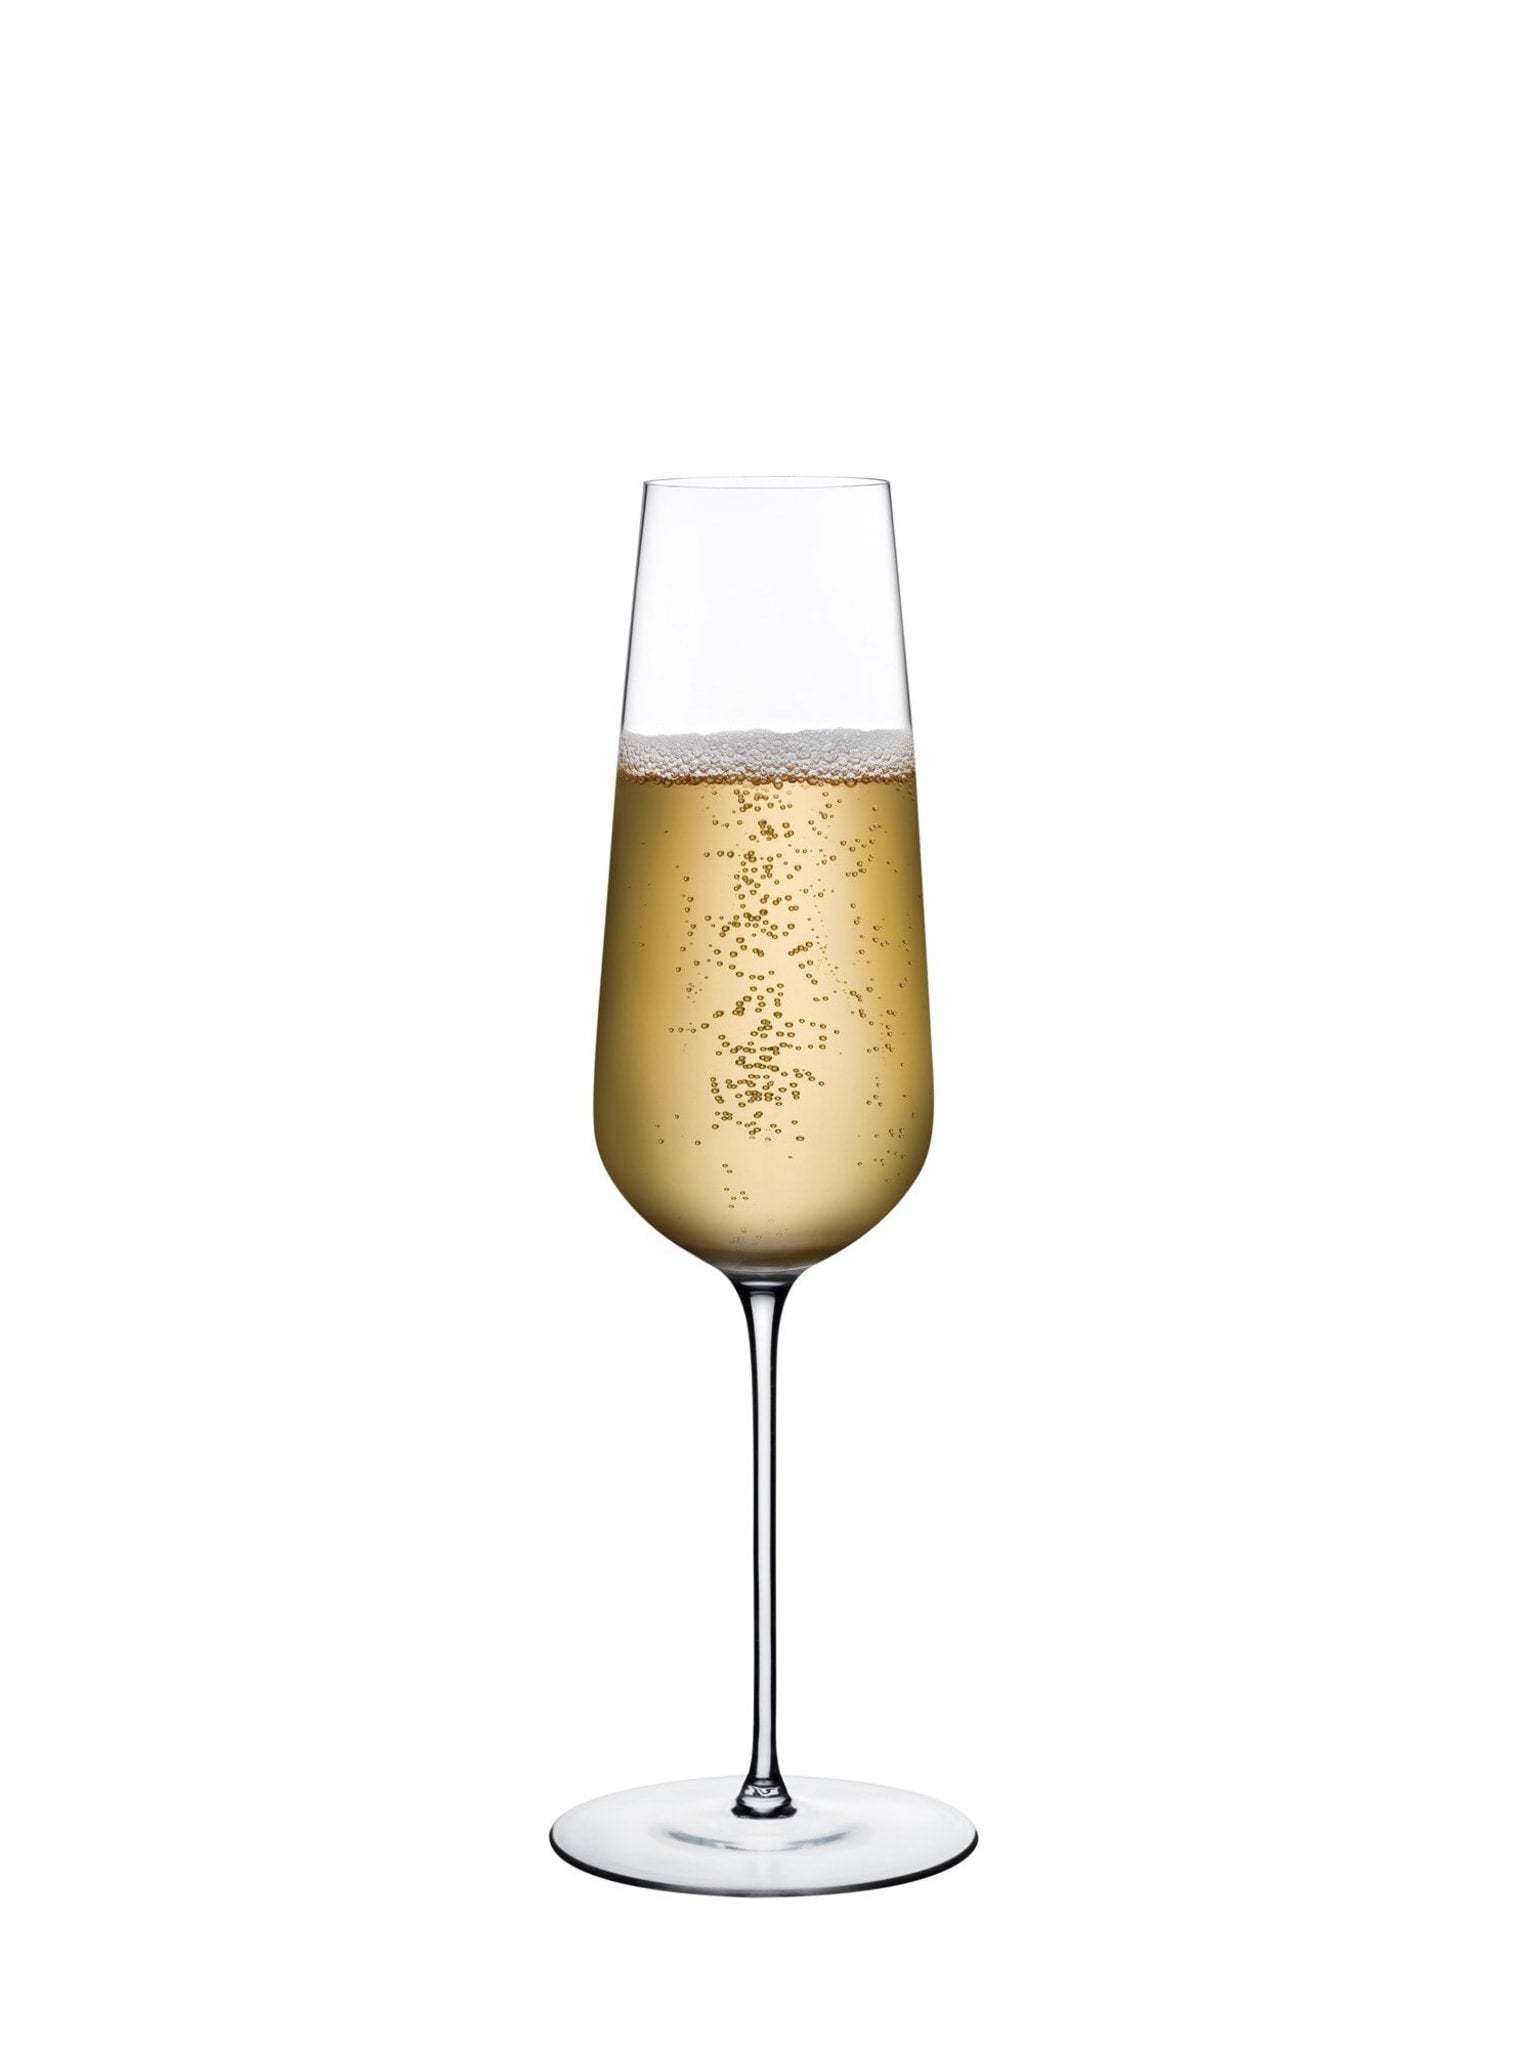 Oplev boblende fornøjelse med denne Stem Zero Champagne uden tilsat sukker eller kalorier.